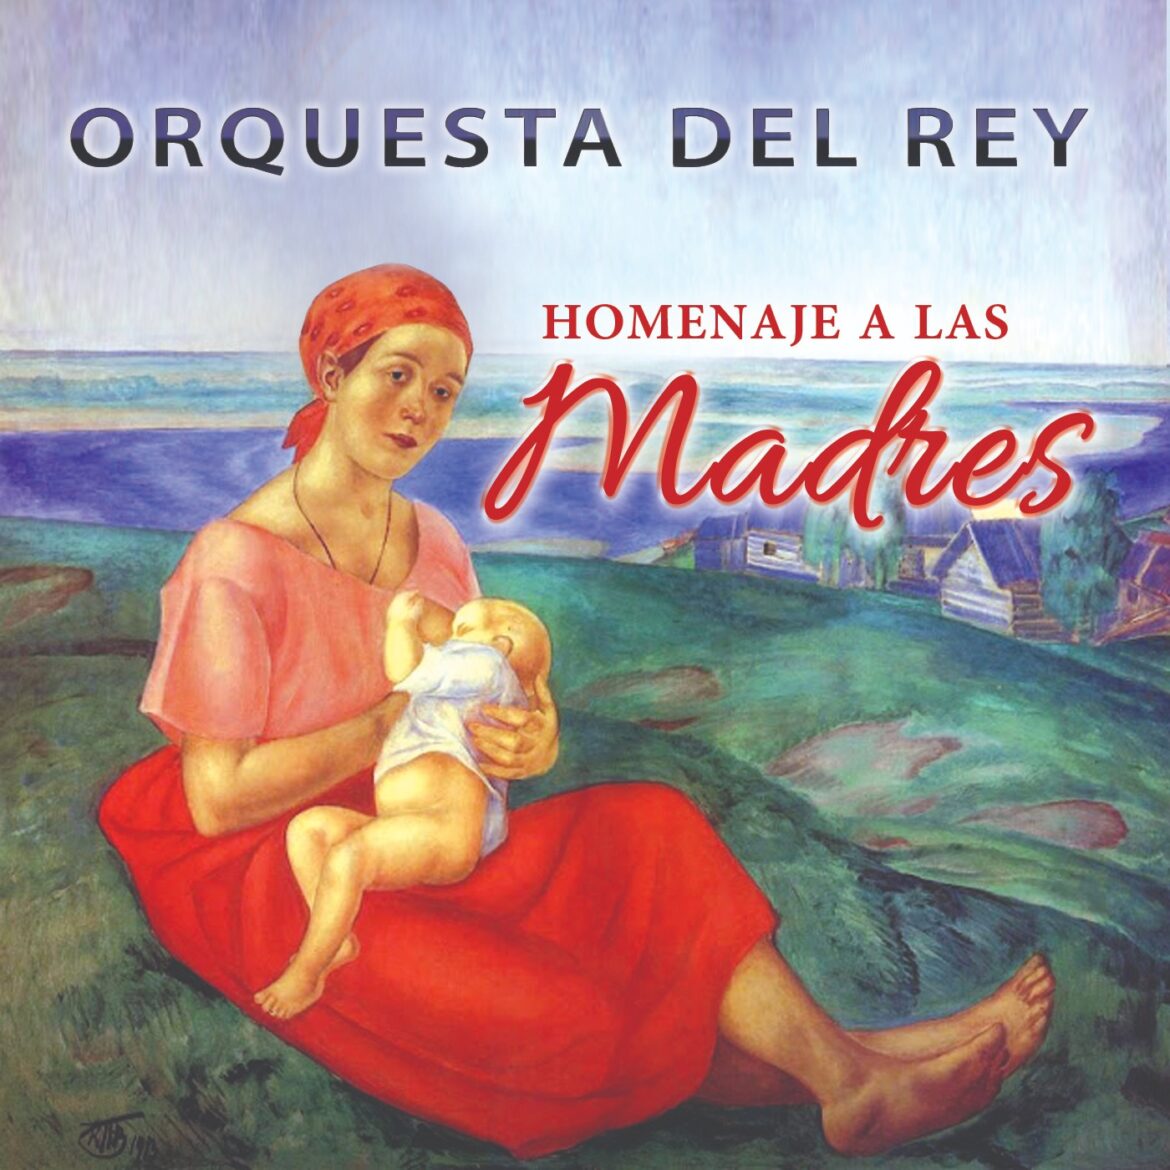 Homenaje a todas las madres por la  Orquesta Del Rey con su tema de título “Las Madres”